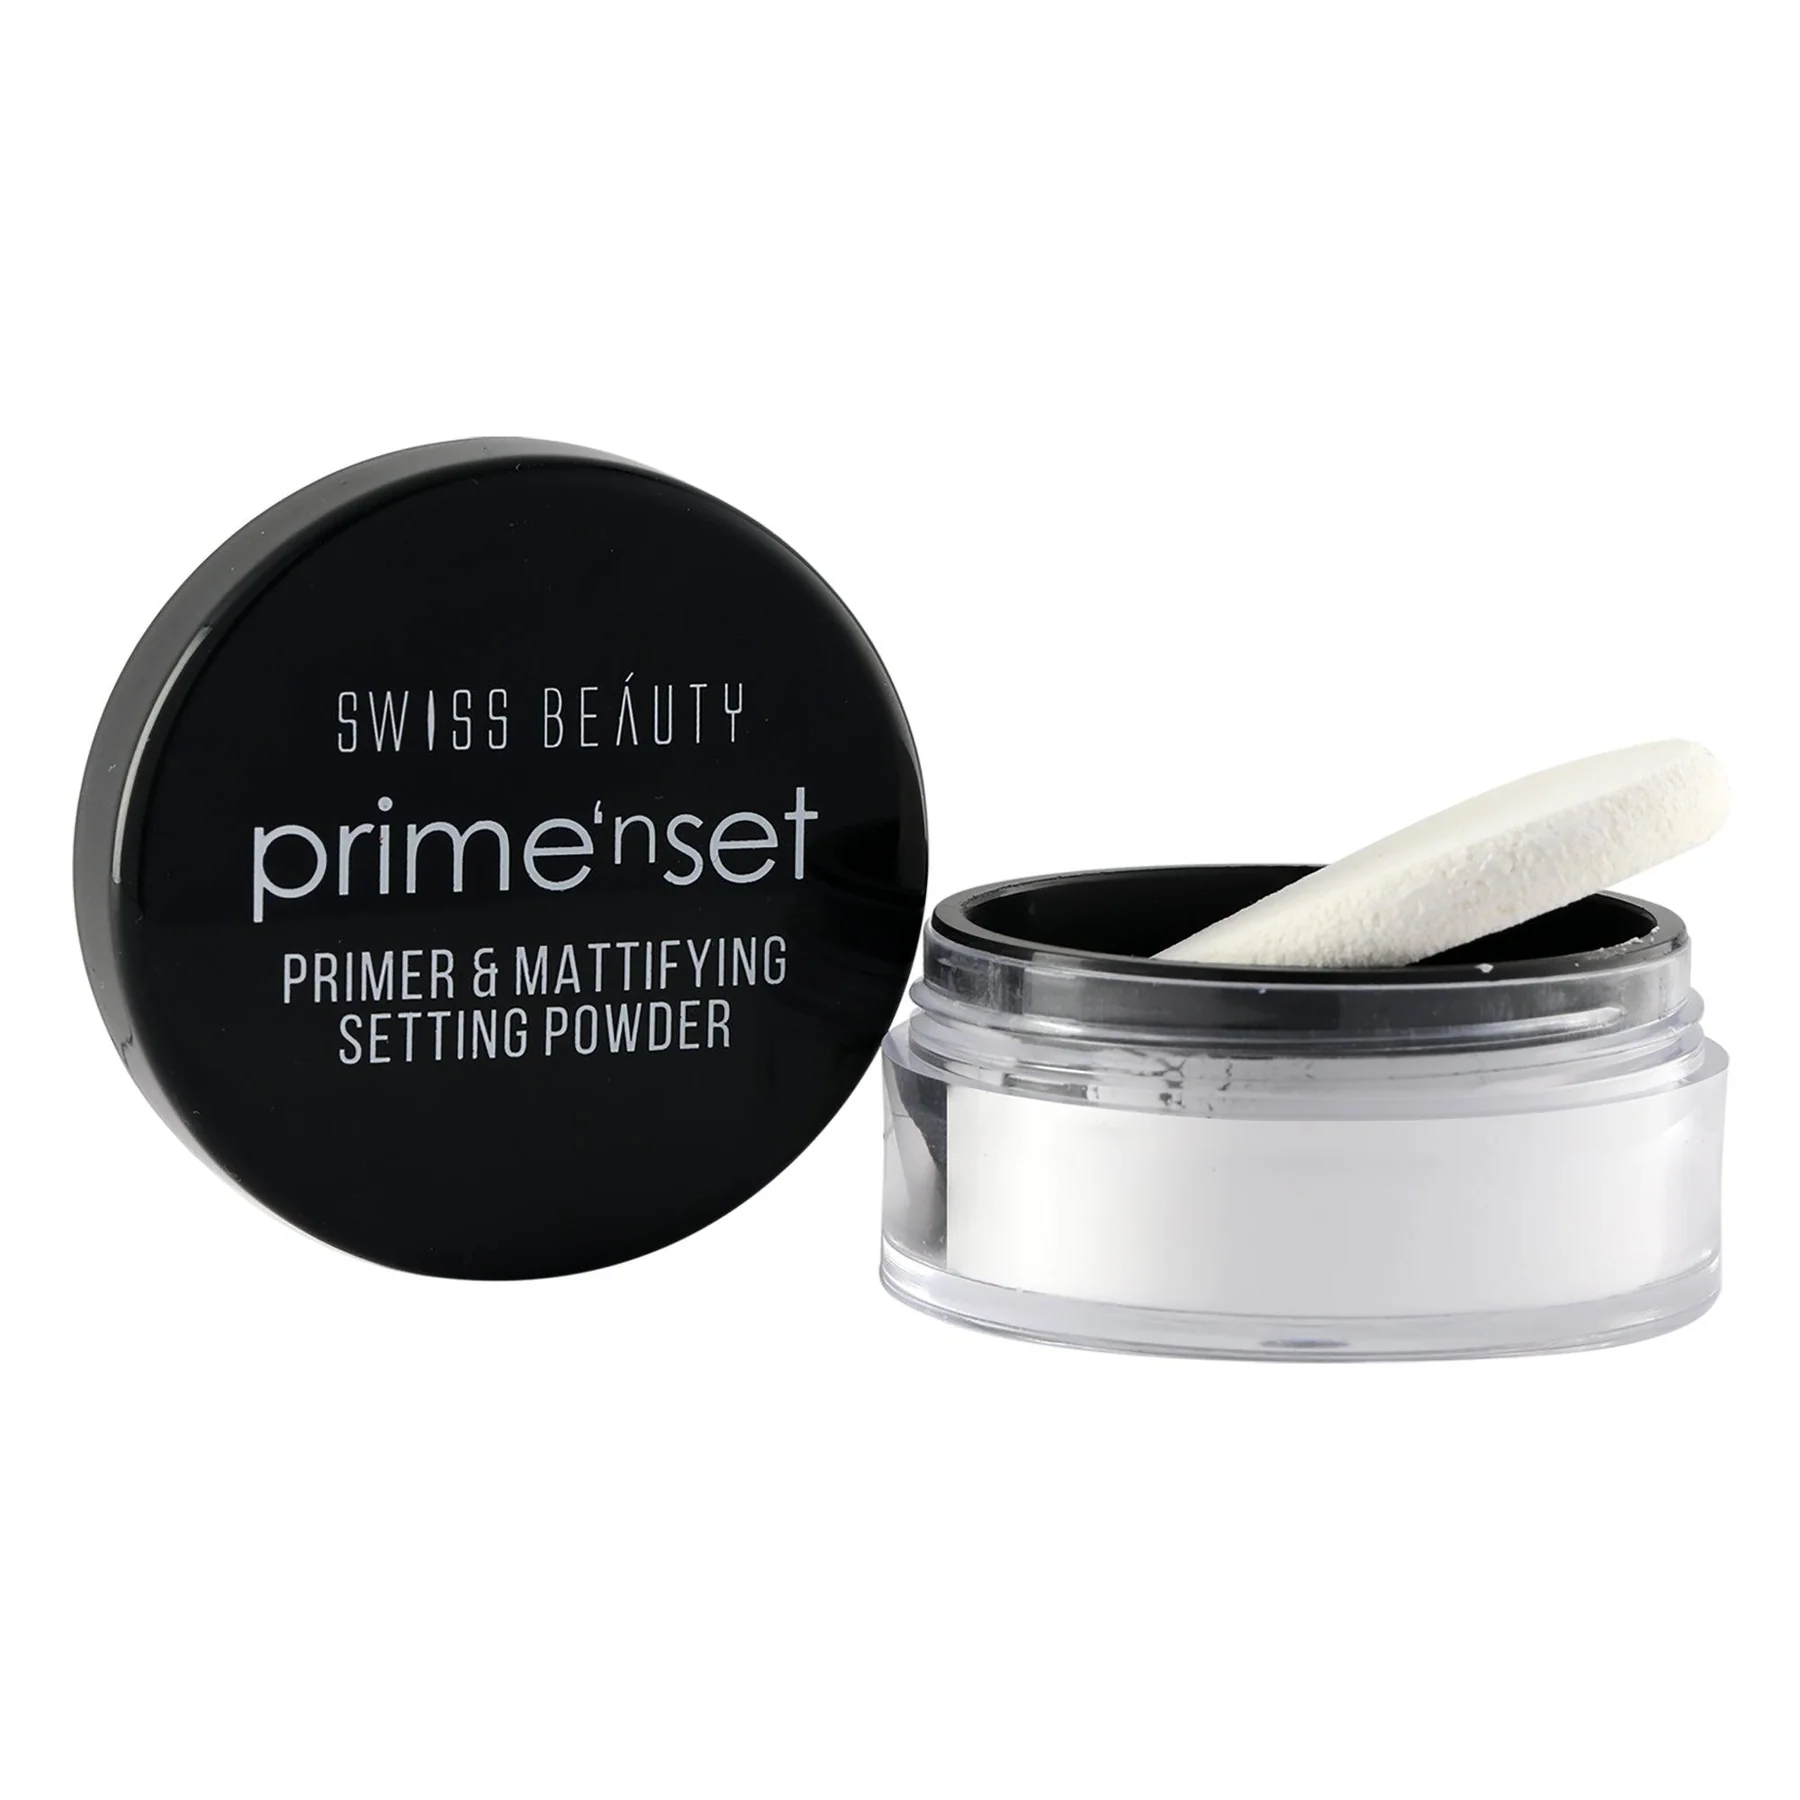 Swiss beauty primer and mattifying setting powder